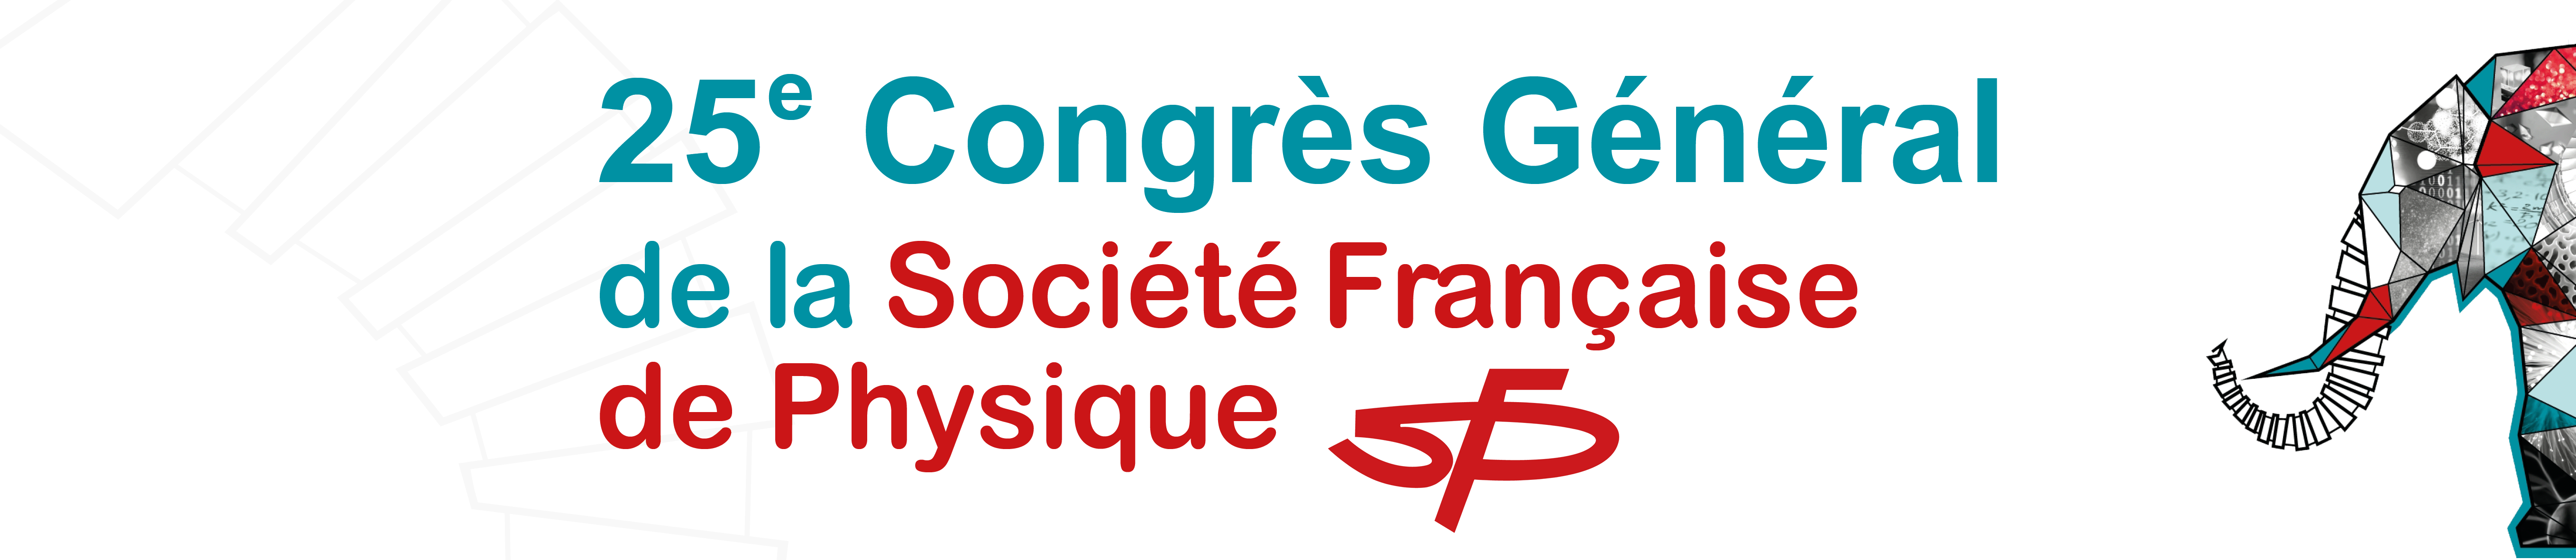 25ème Congrès Général de la SFP 2019